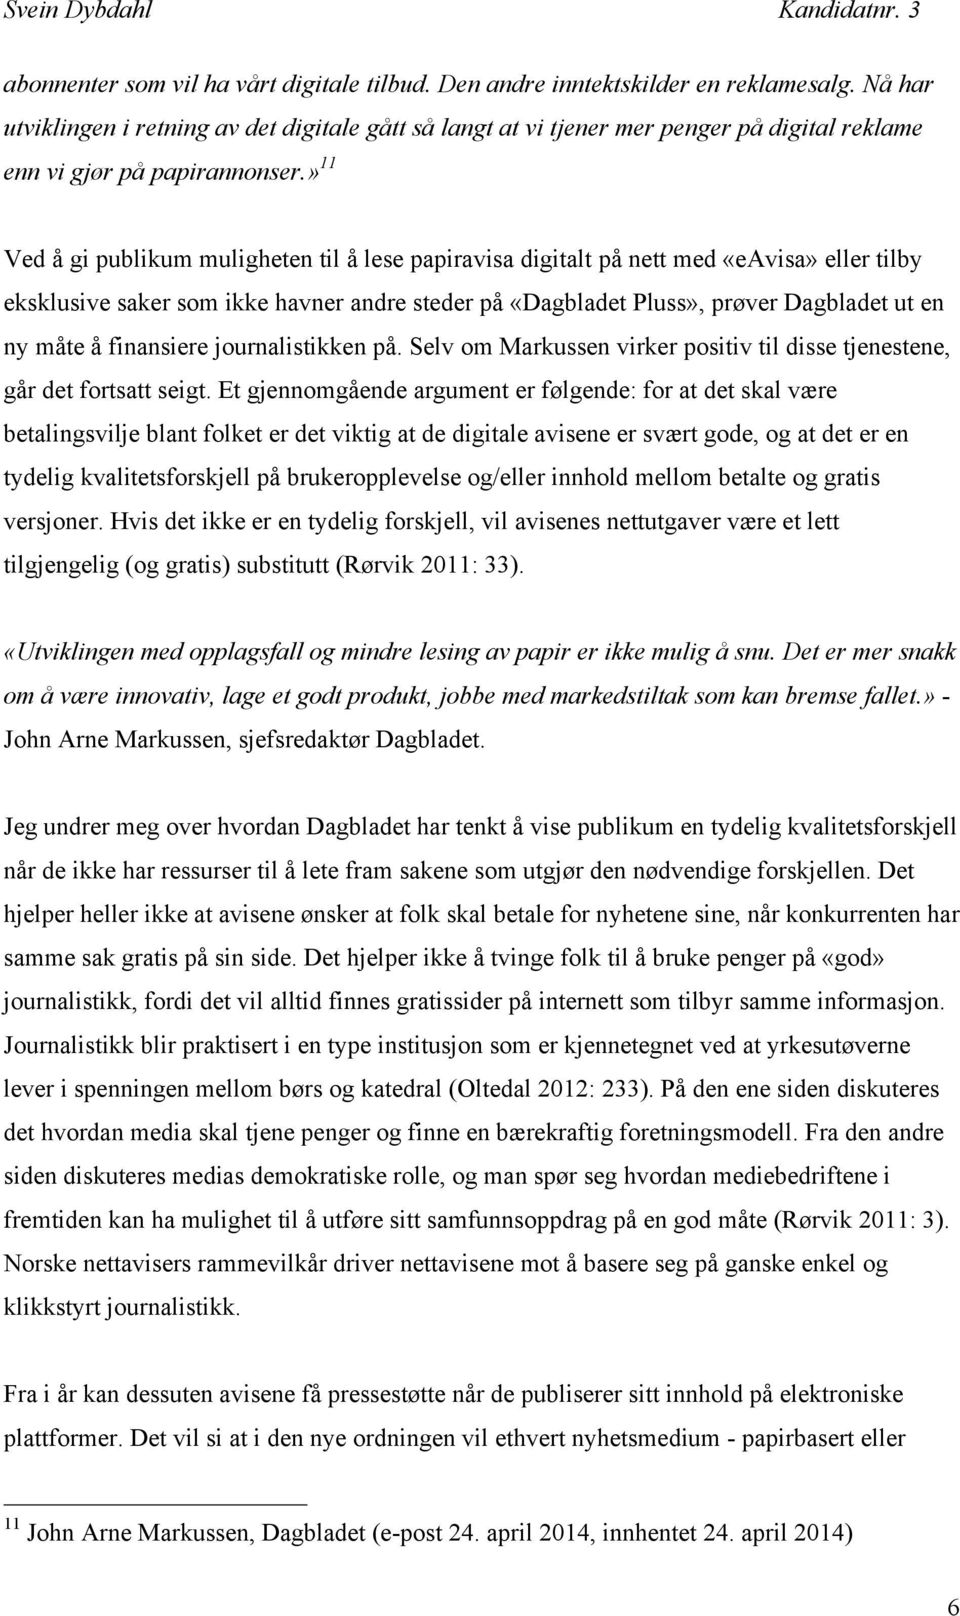 » 11 Ved å gi publikum muligheten til å lese papiravisa digitalt på nett med «eavisa» eller tilby eksklusive saker som ikke havner andre steder på «Dagbladet Pluss», prøver Dagbladet ut en ny måte å